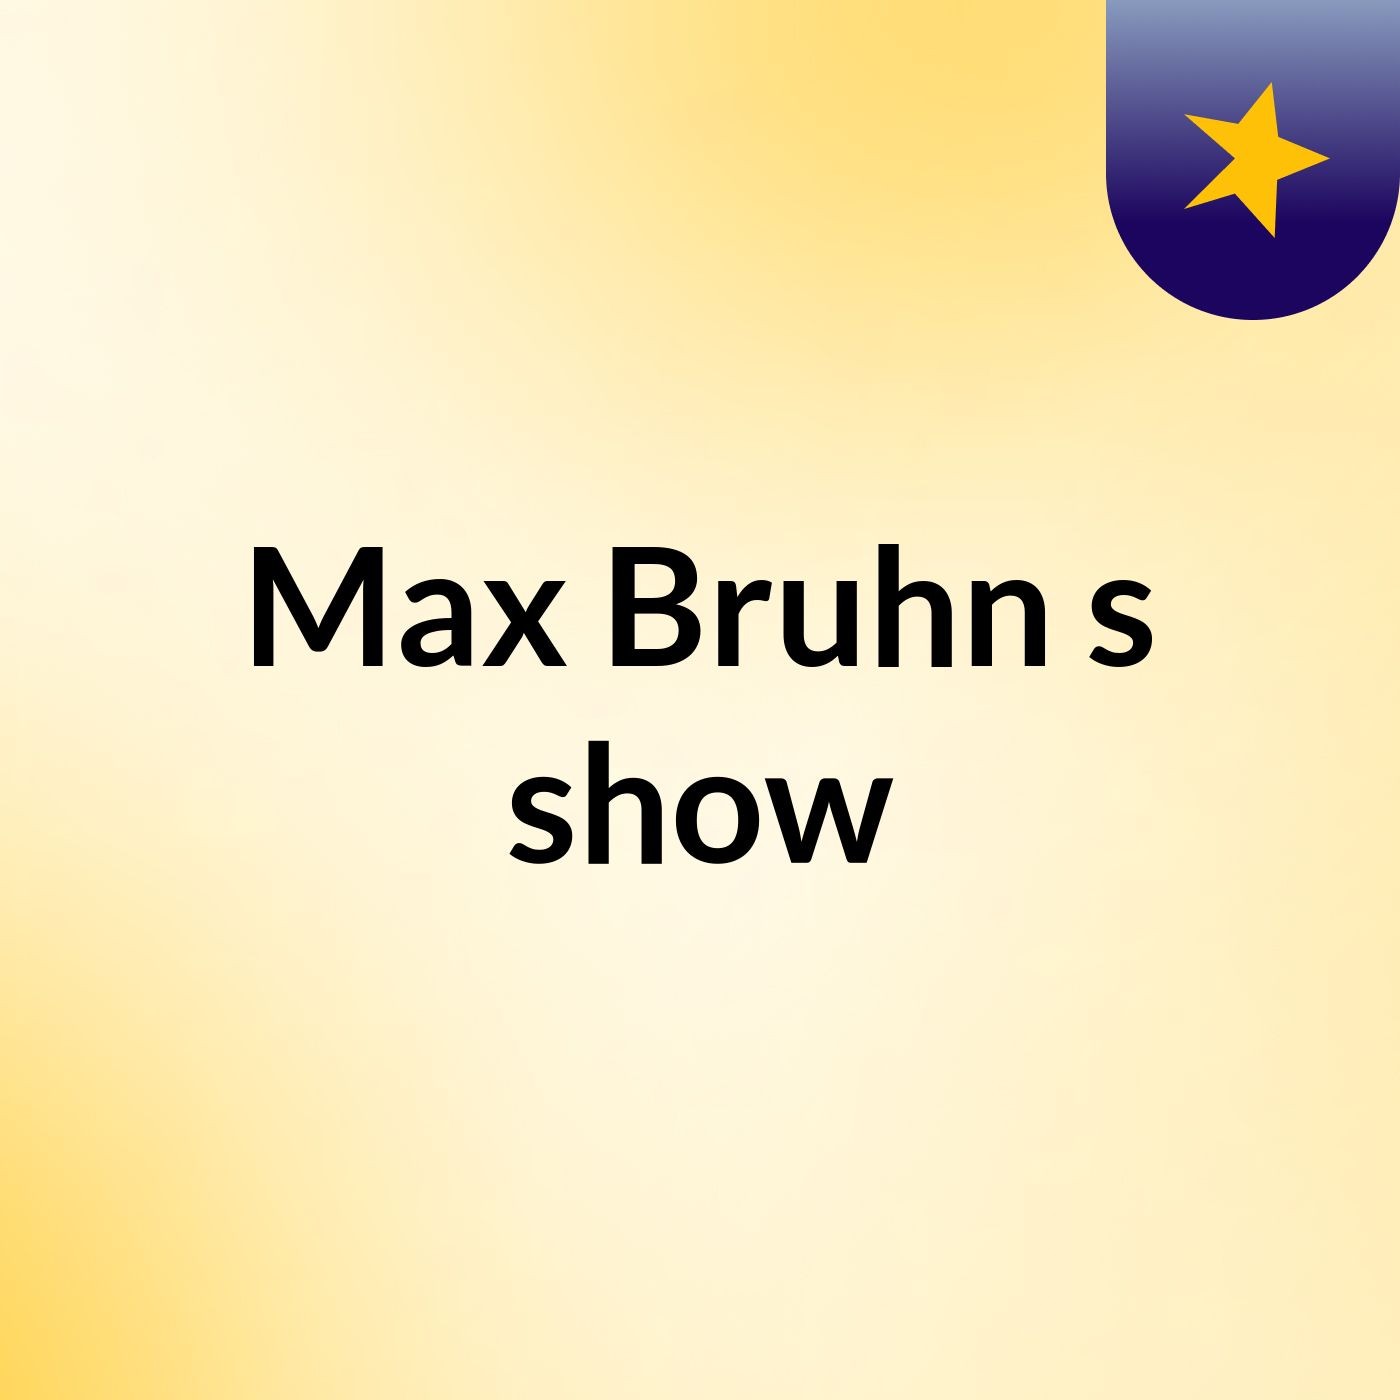 Max Bruhn's show